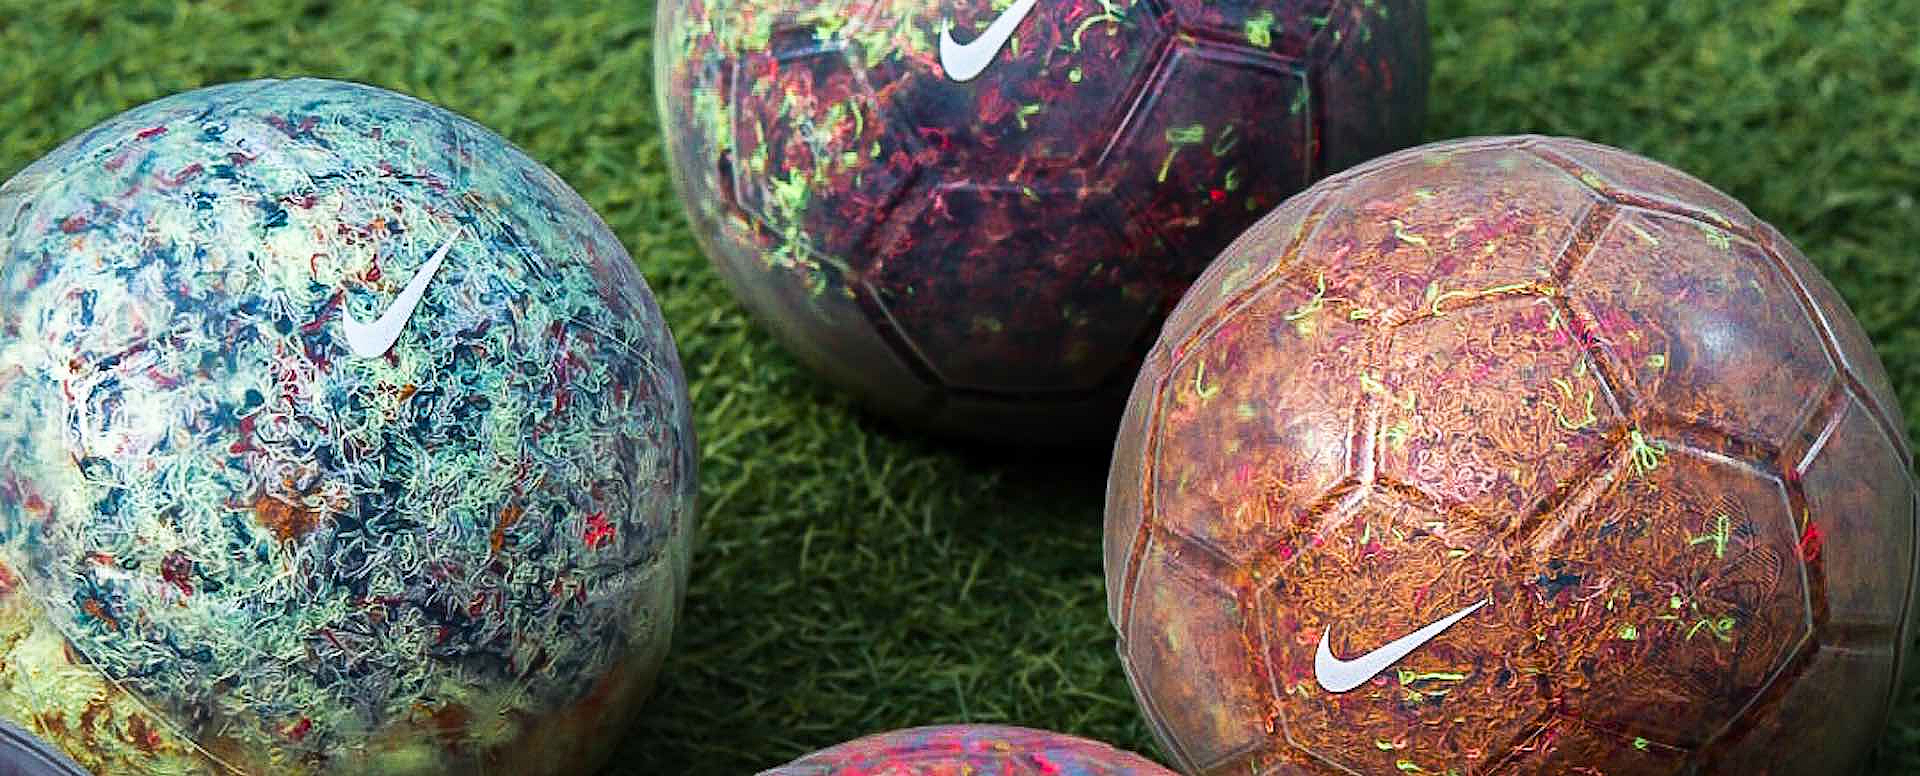 Comment distinguer les différents types de ballons de soccer?